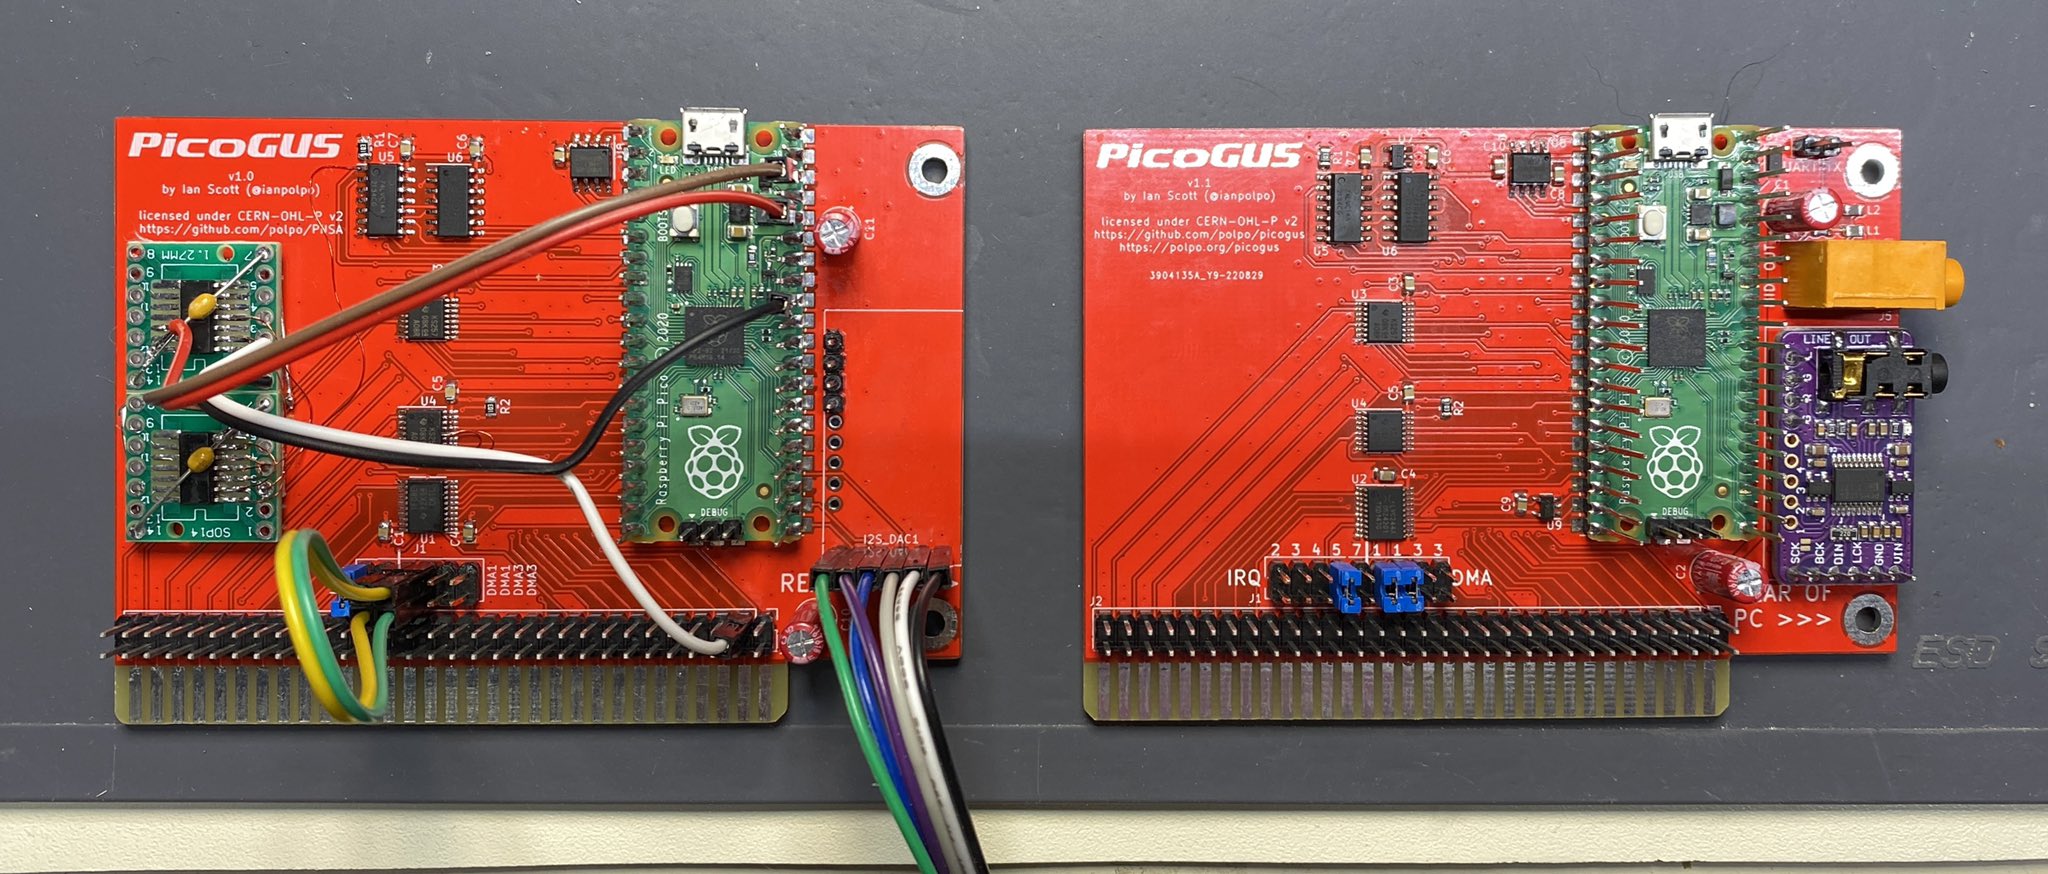 A PicoGUS v1 next to a PicoGUS v1.1